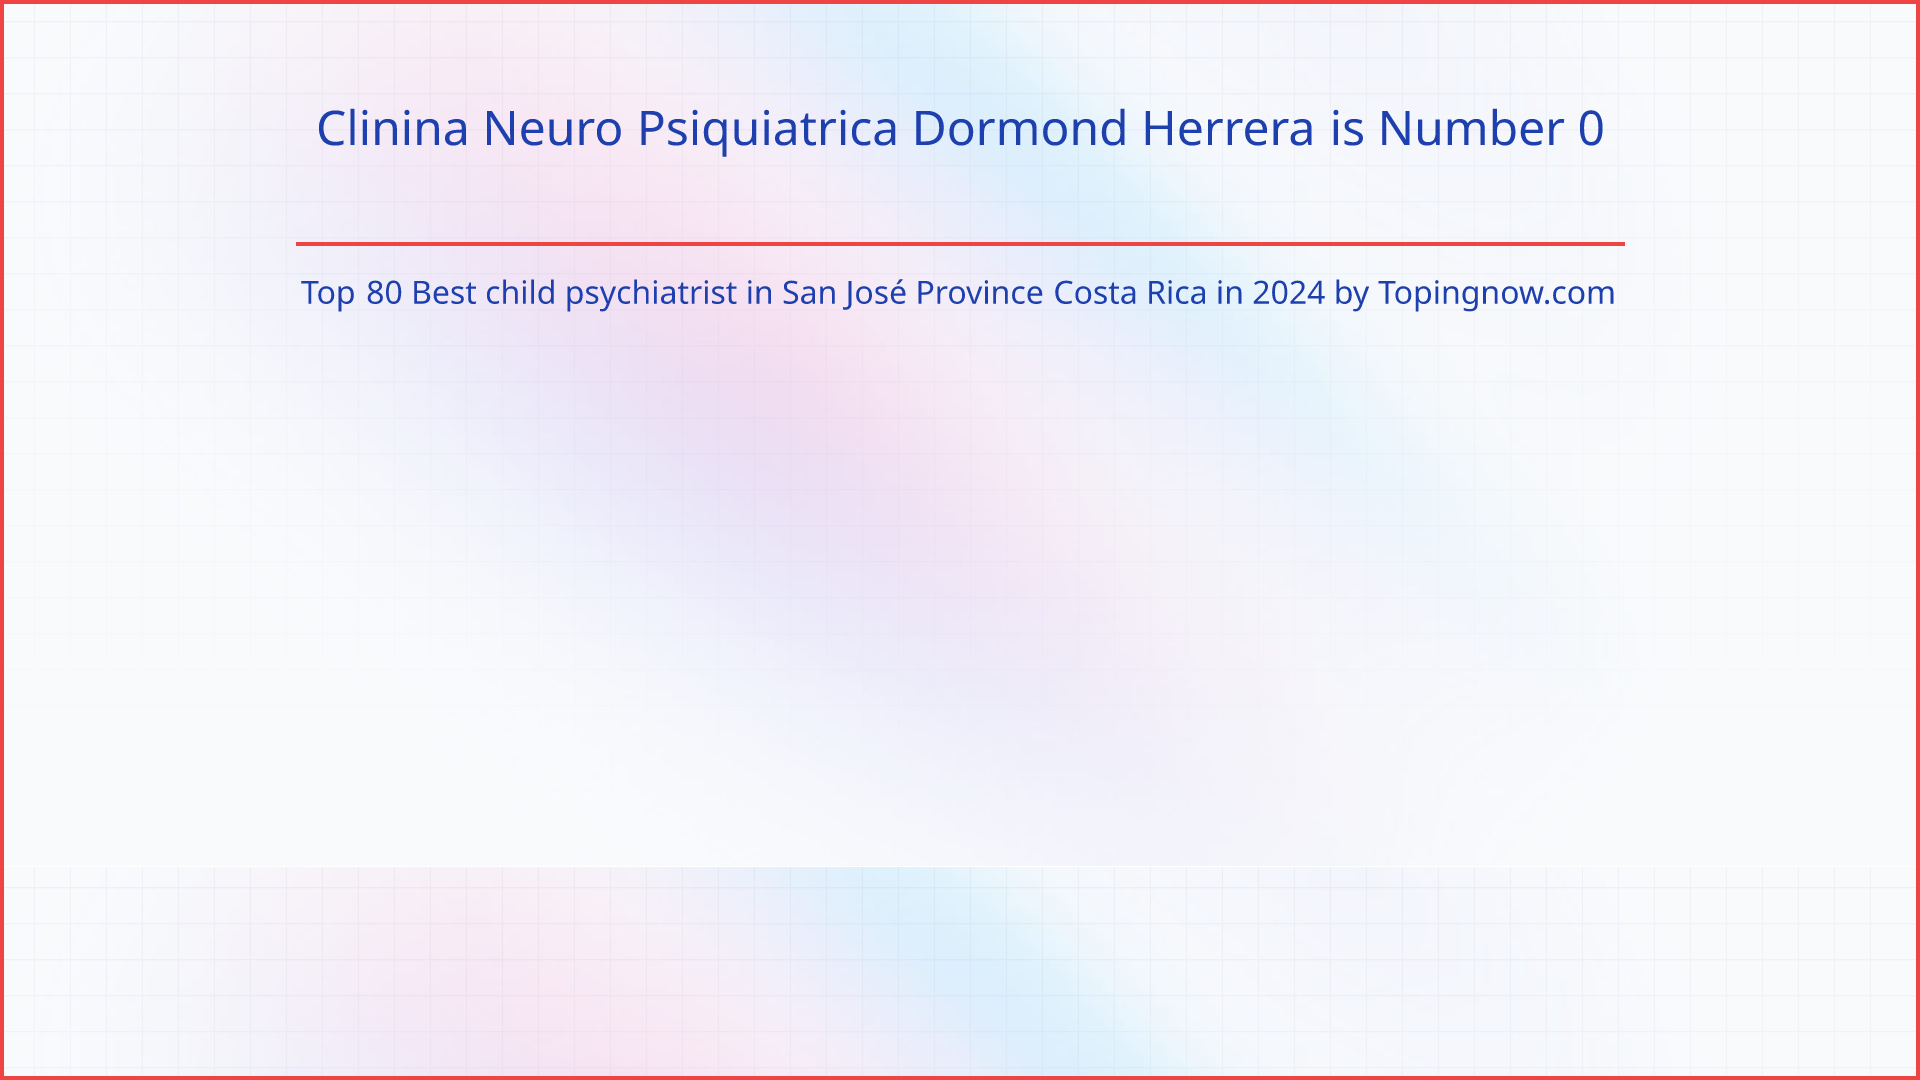 Clinina Neuro Psiquiatrica Dormond Herrera: Top 80 Best child psychiatrist in San José Province Costa Rica in 2024